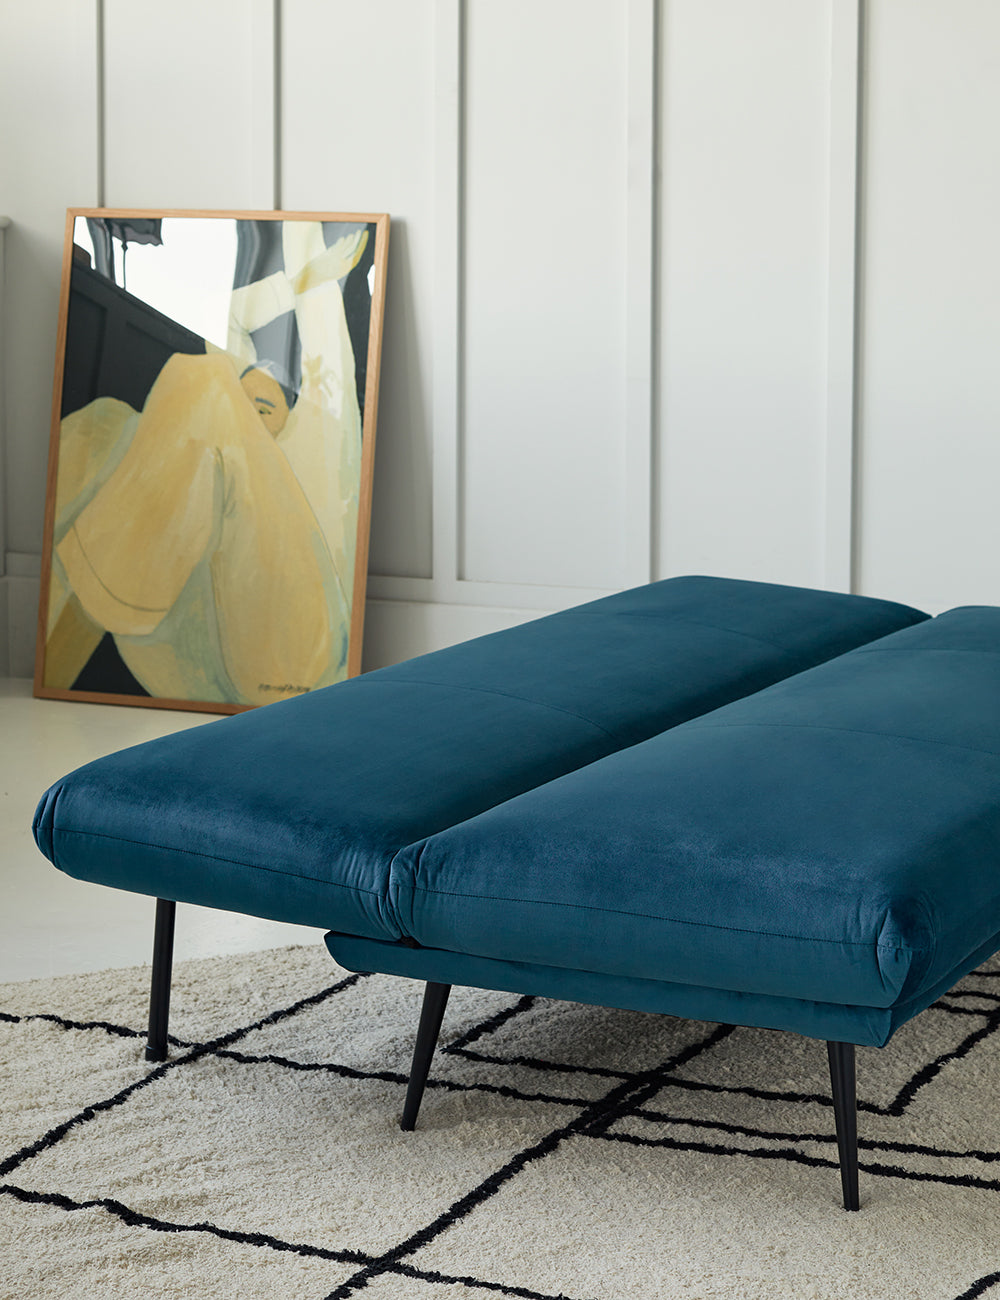 Blue Velvet Sofa Bed